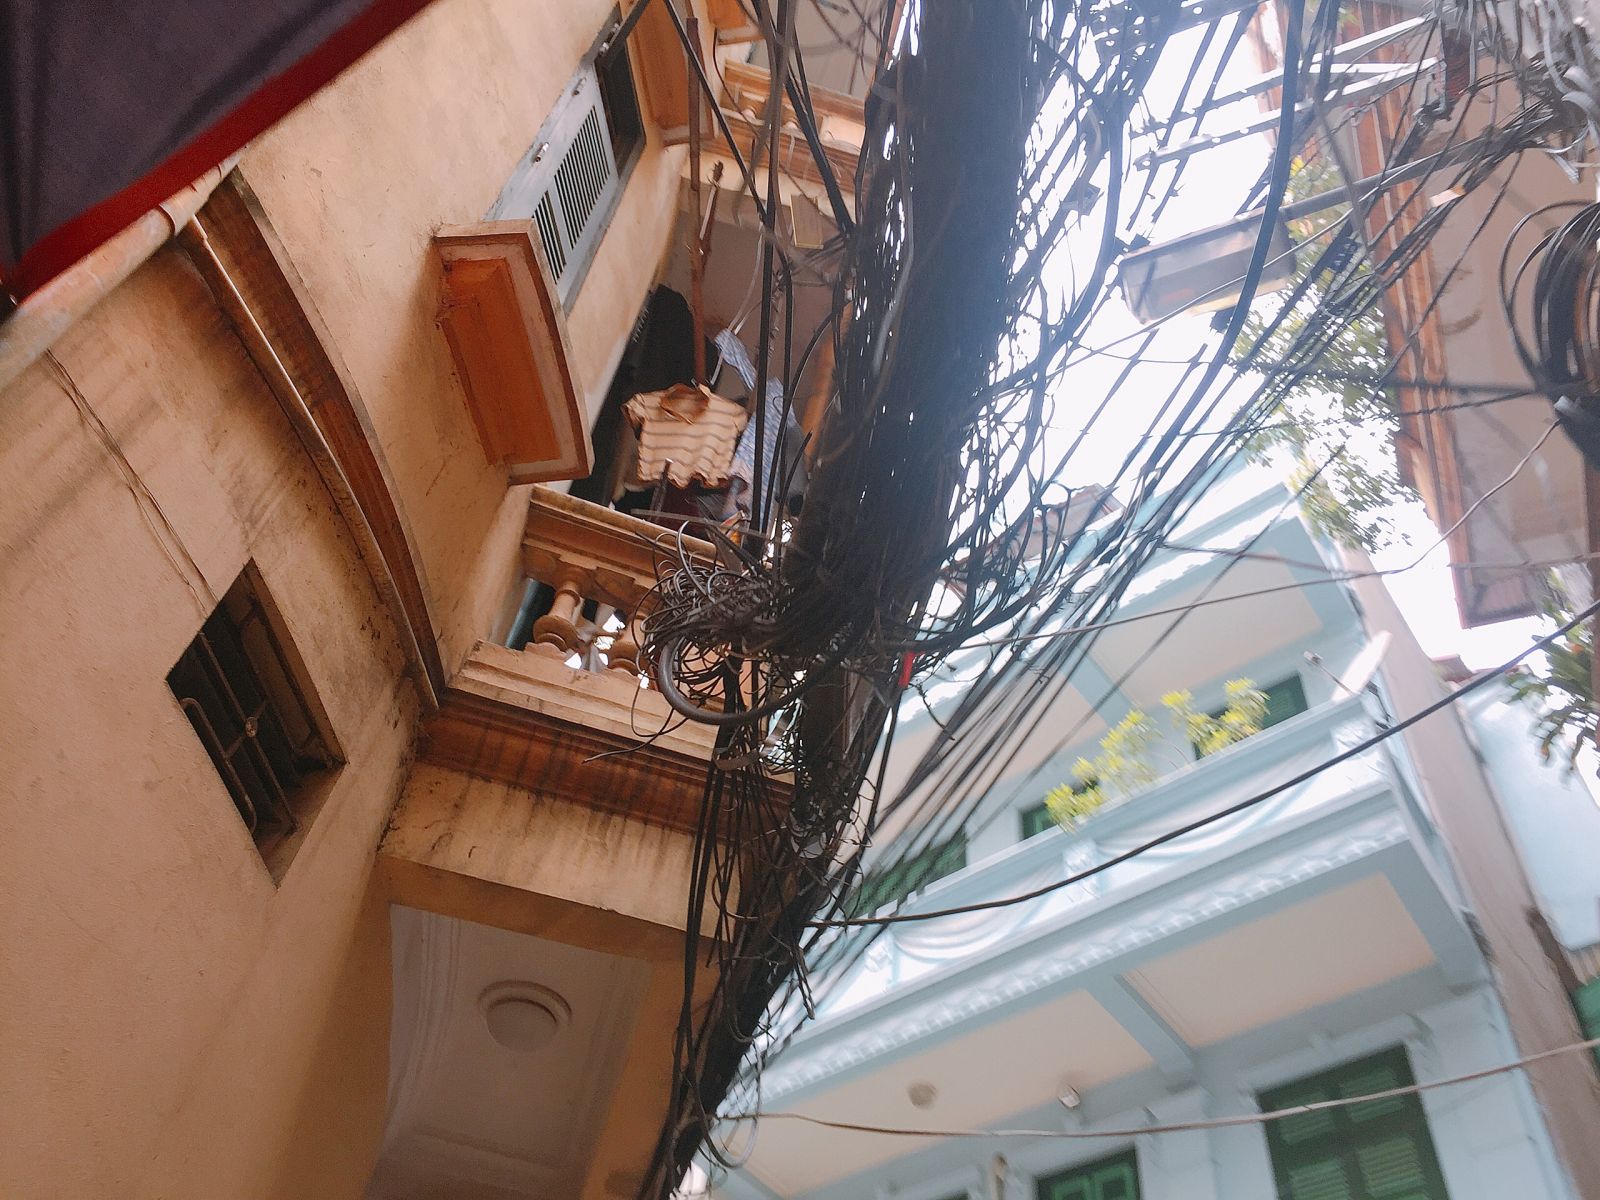 Hệ thống dây điện gây khó khăn, nguy hiểm, khiến nhiều hộ dân sống trong bất an.